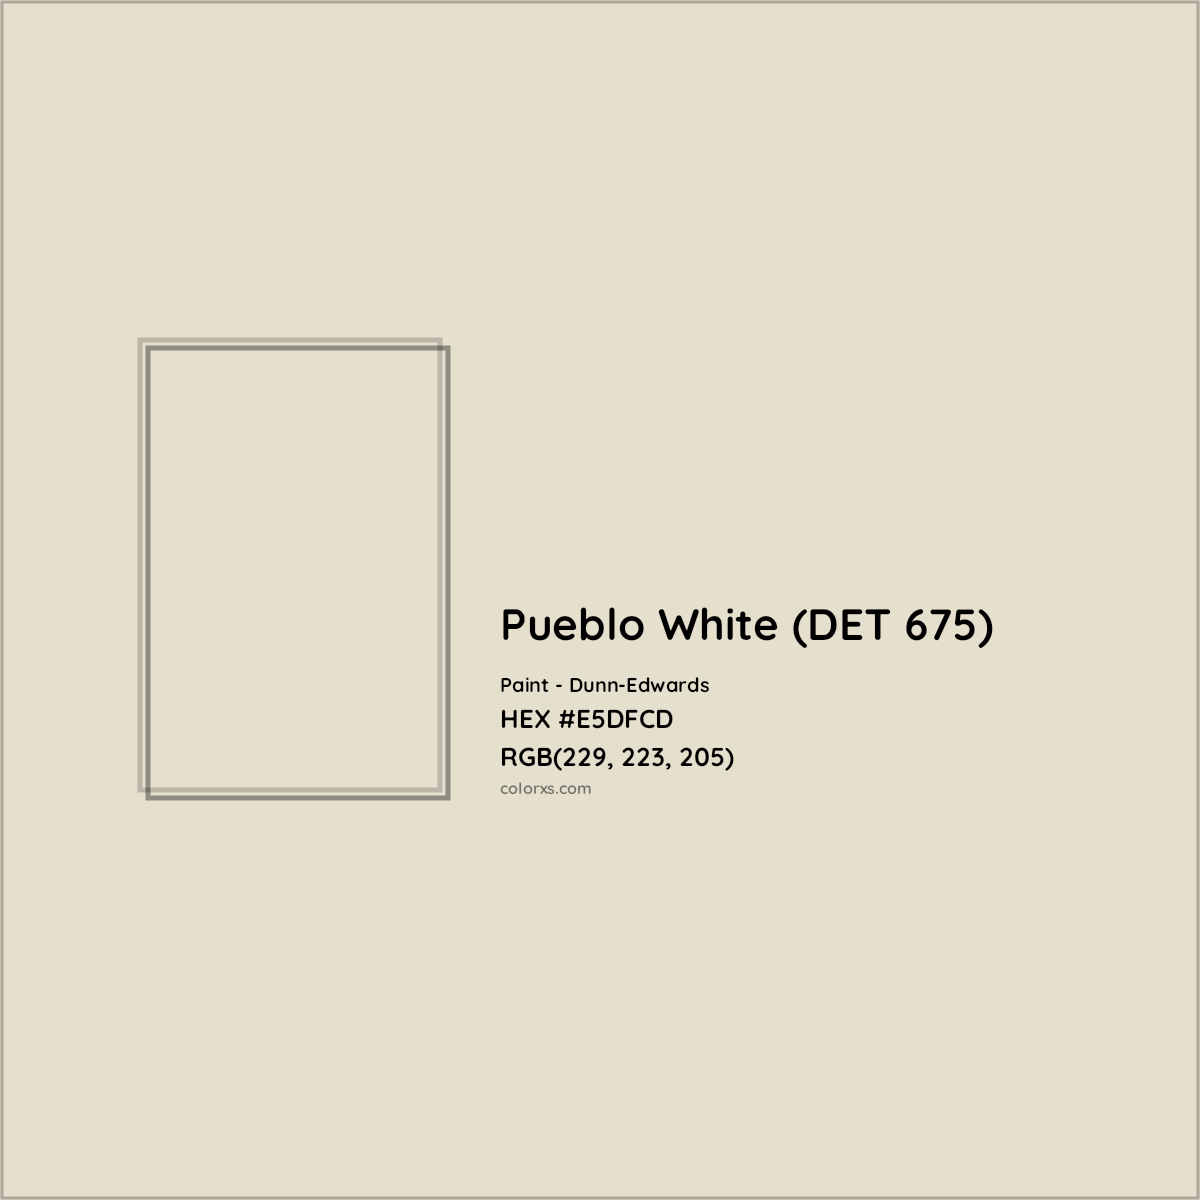 HEX #E5DFCD Pueblo White (DET 675) Paint Dunn-Edwards - Color Code